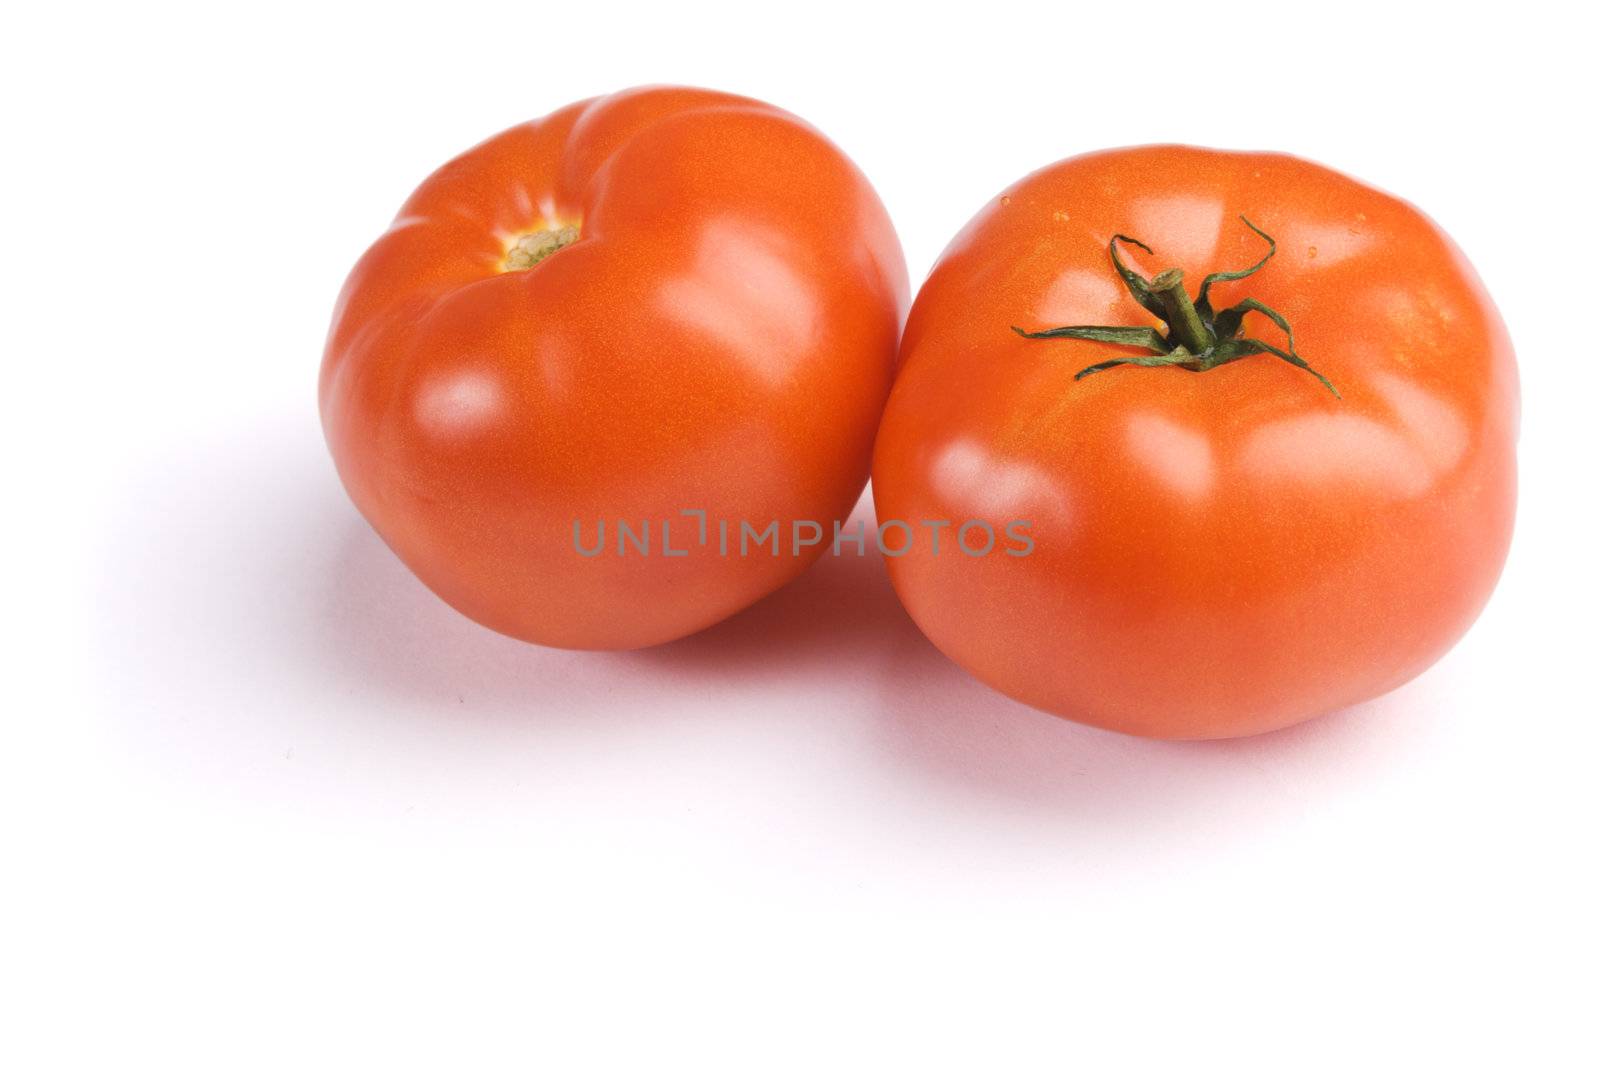 Ripe tomatoes by Gdolgikh